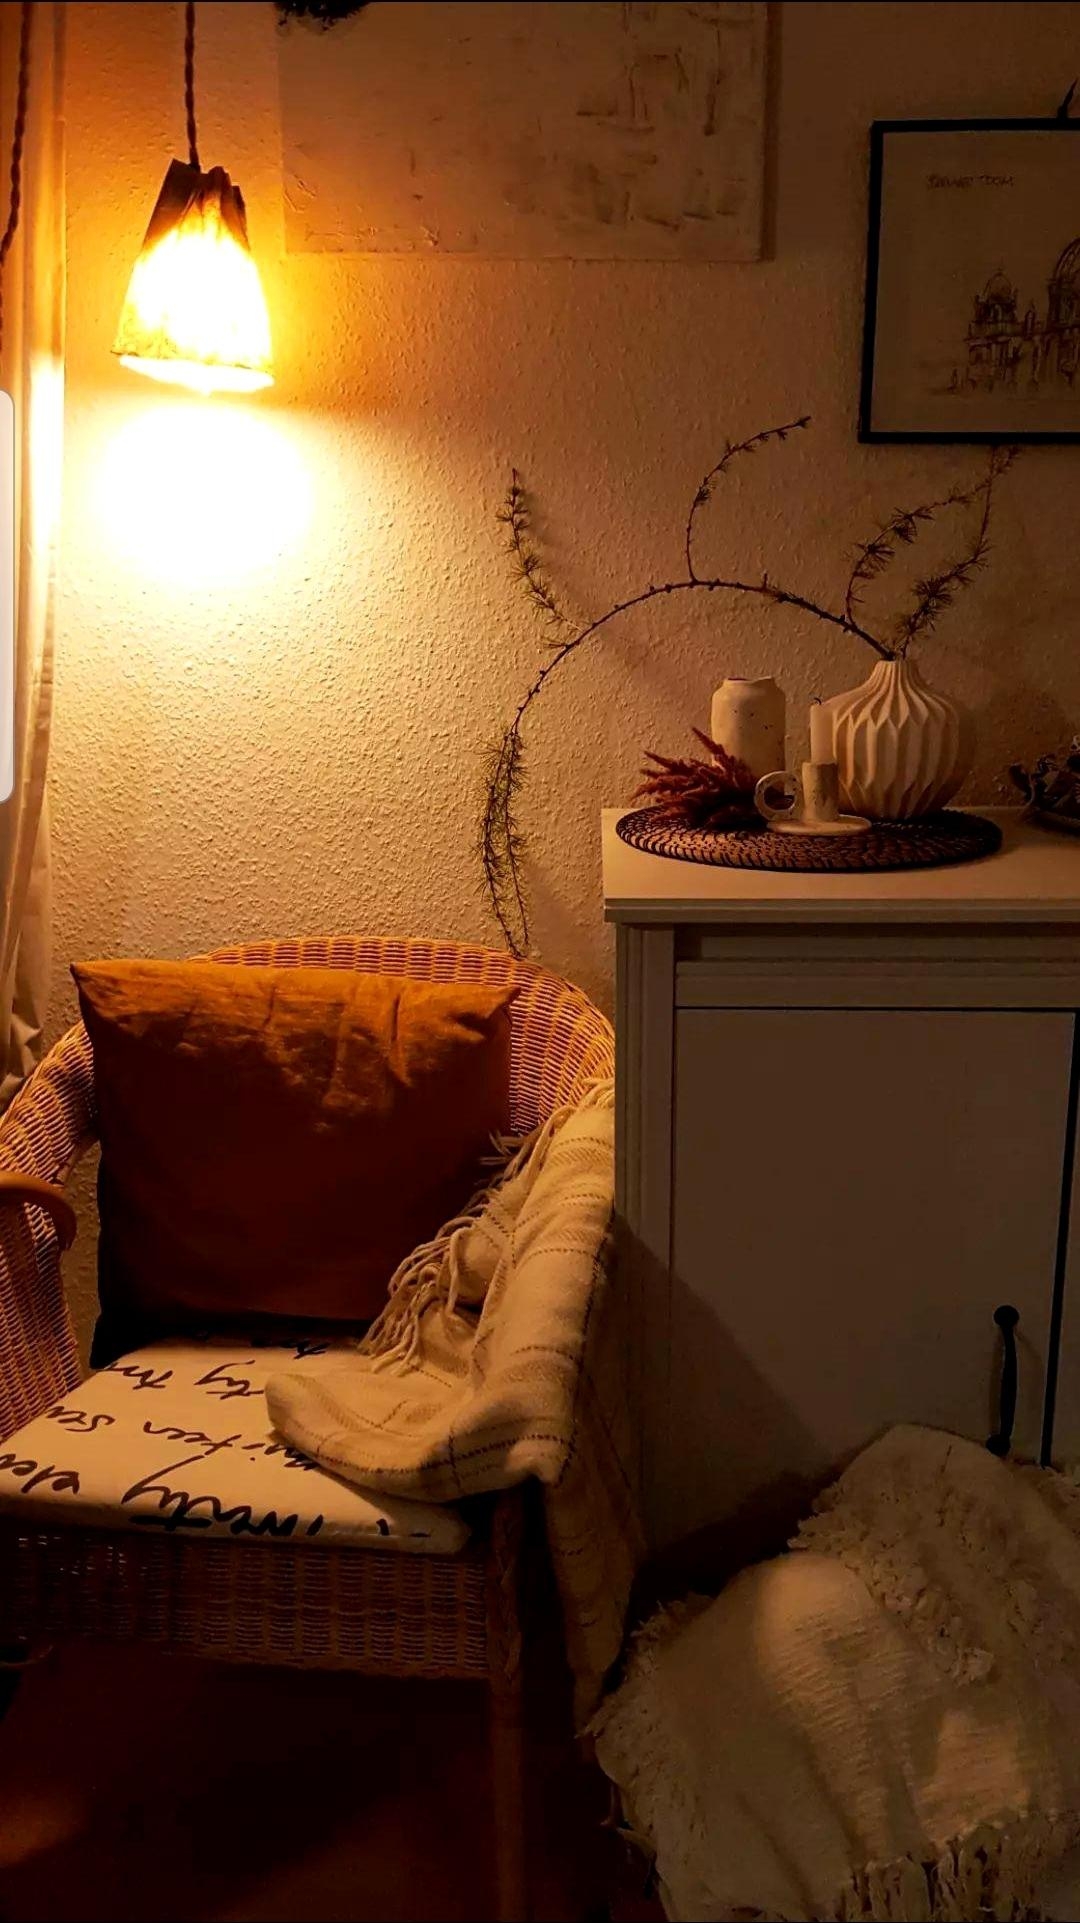 Getting cozy ☆ in der #Leseecke
#herbst im #wohnzimmer mit #zweig in der neuen #Flohmarkt #Vase vom Gemeindebazar - liebe den #Origami #Style :) 